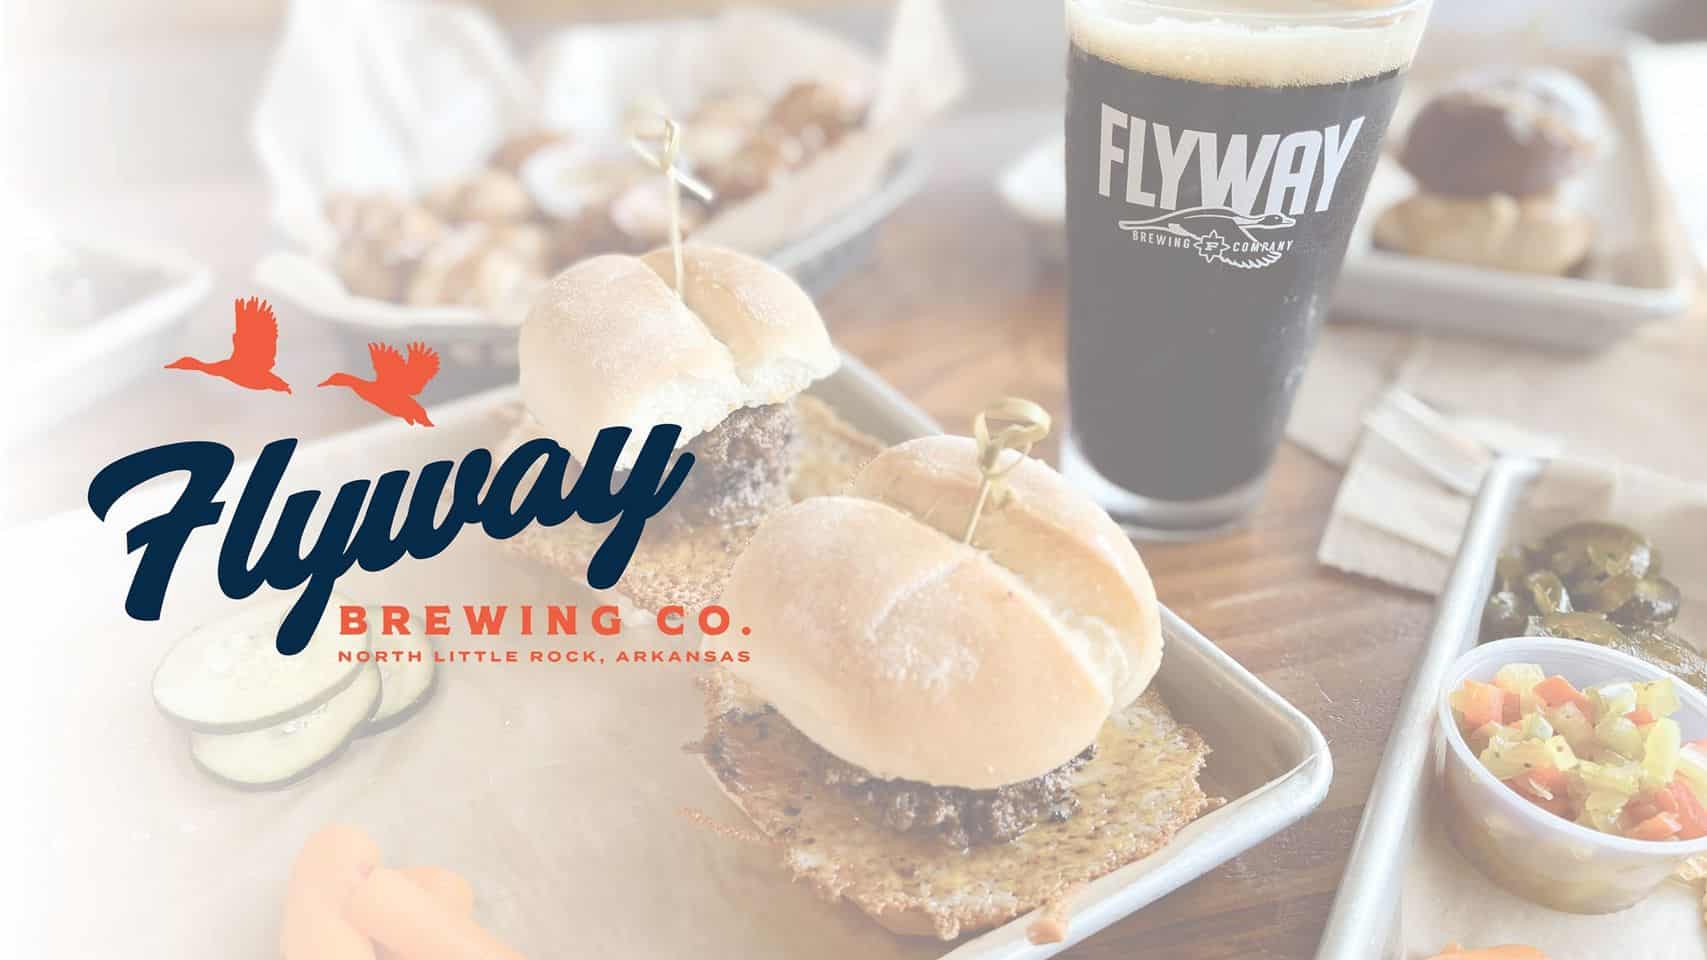 Flyway Brewing Co